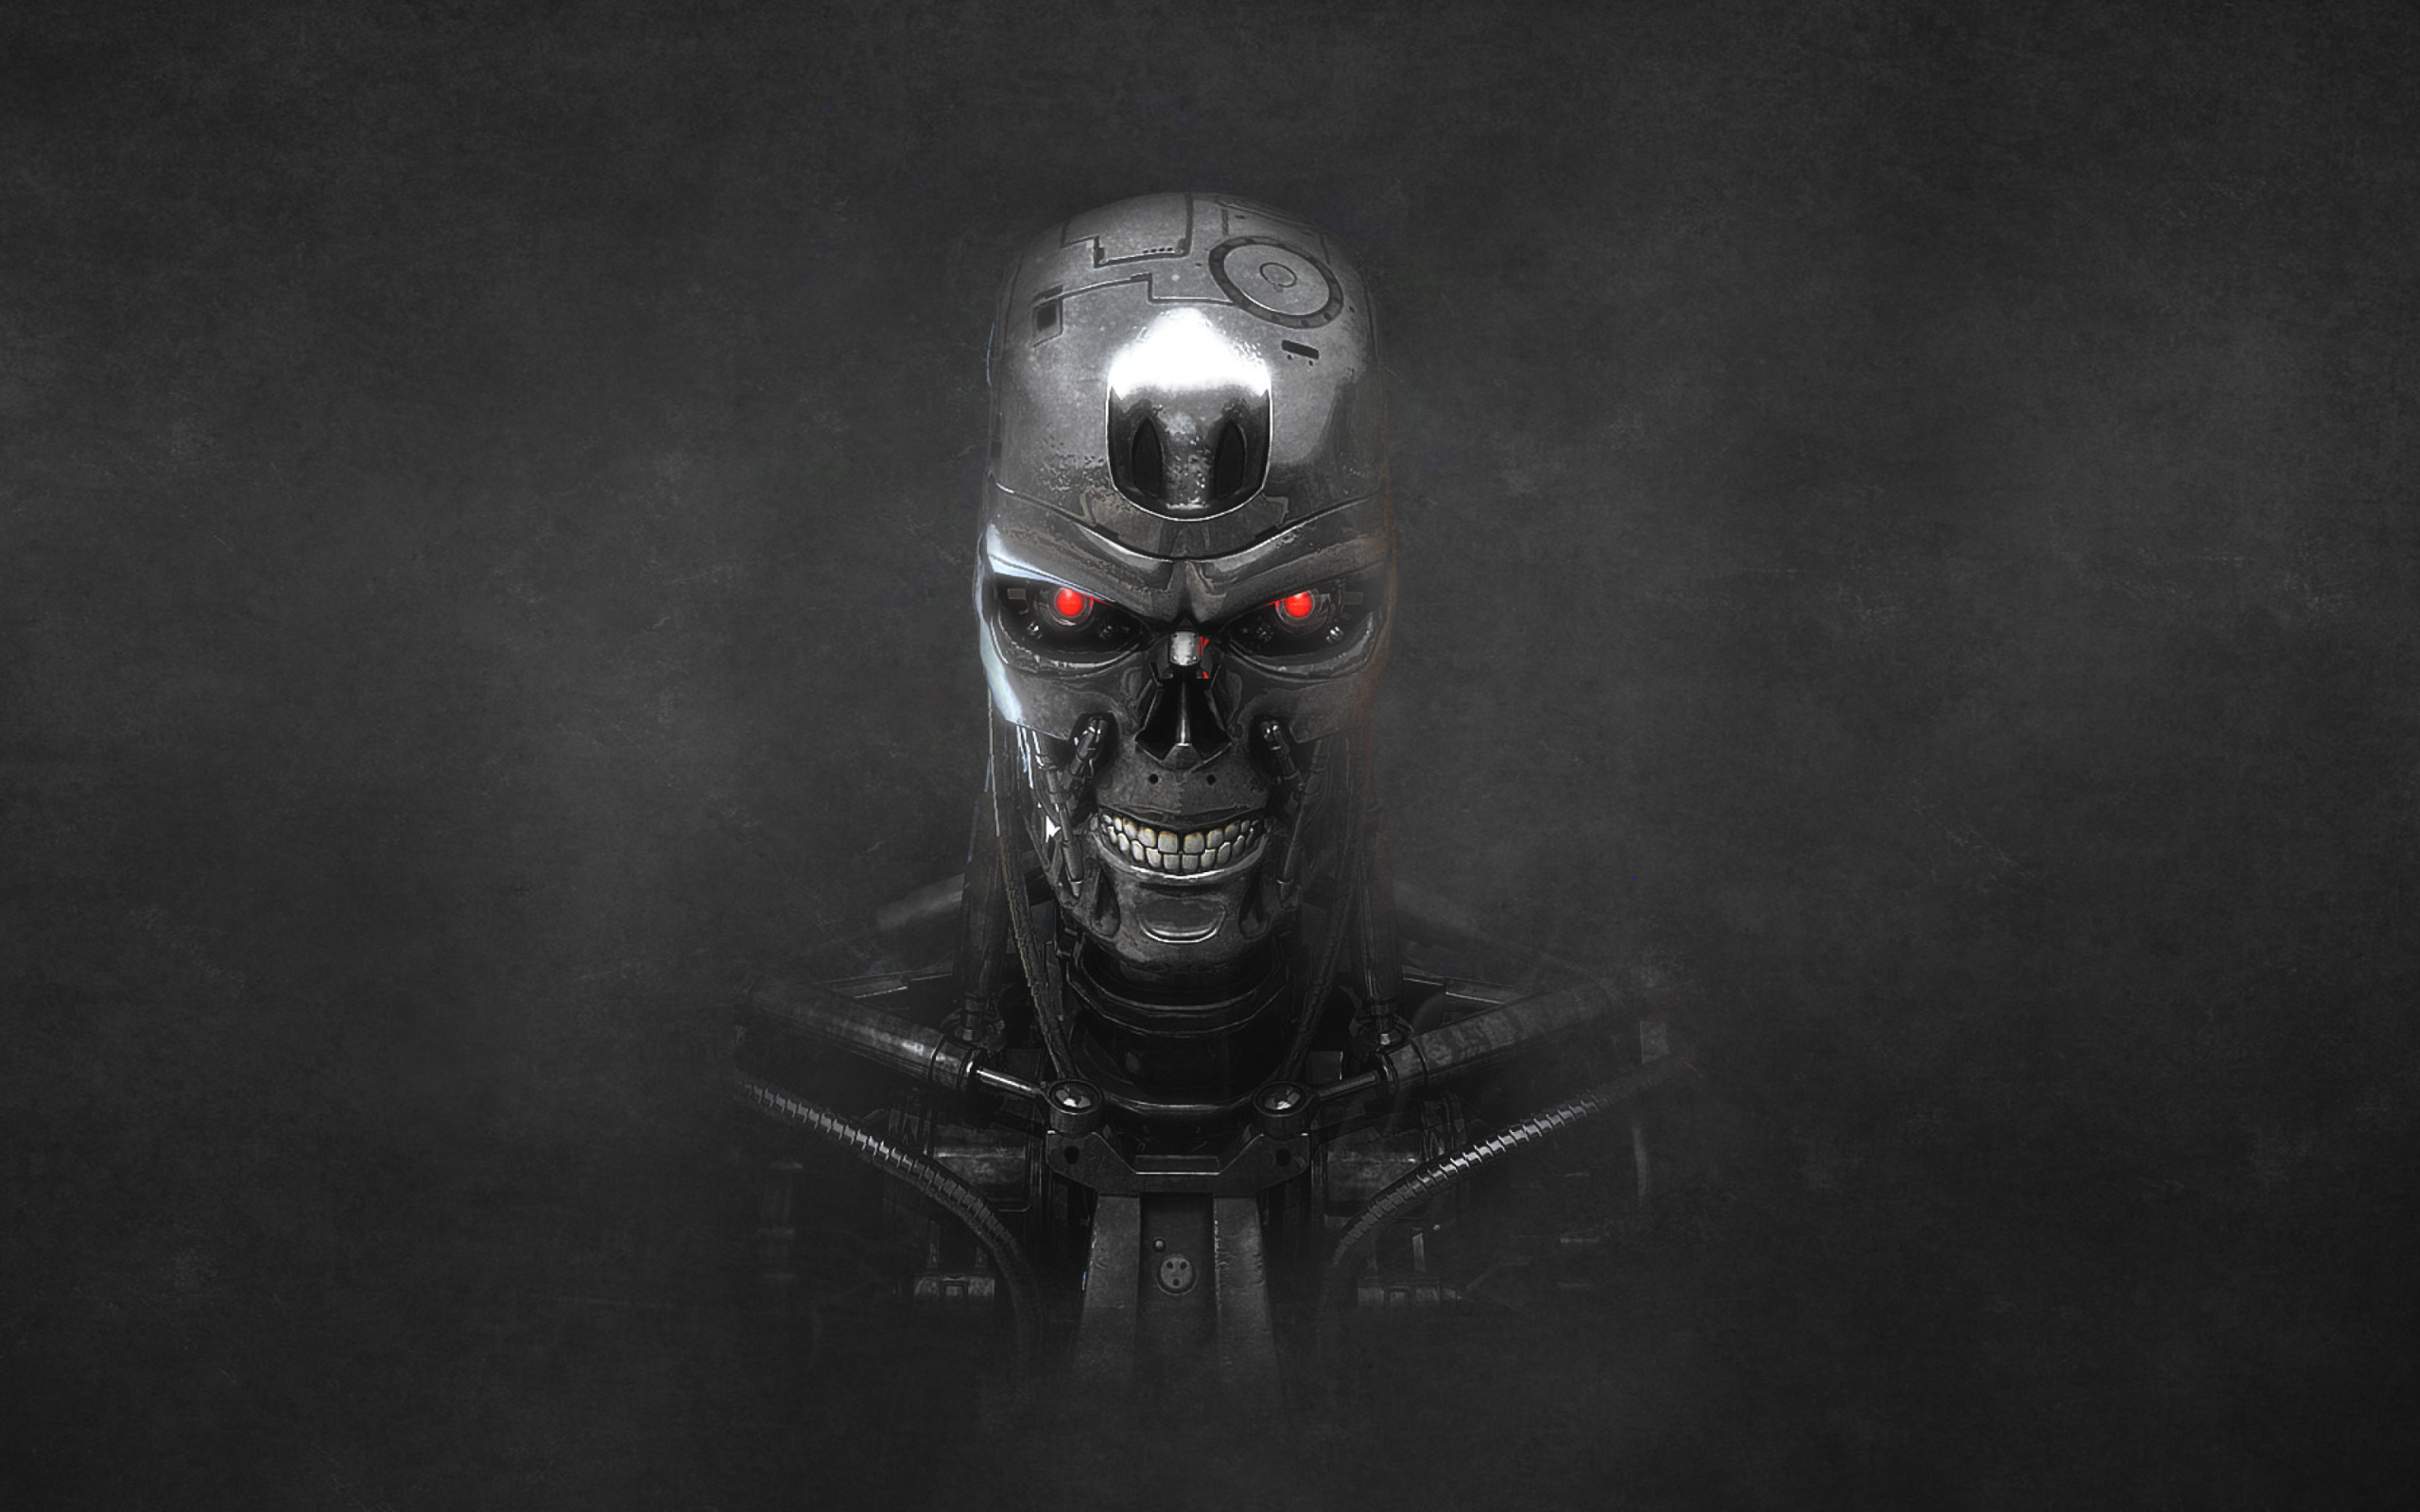 Sfondi Terminator Endoskull 2560x1600